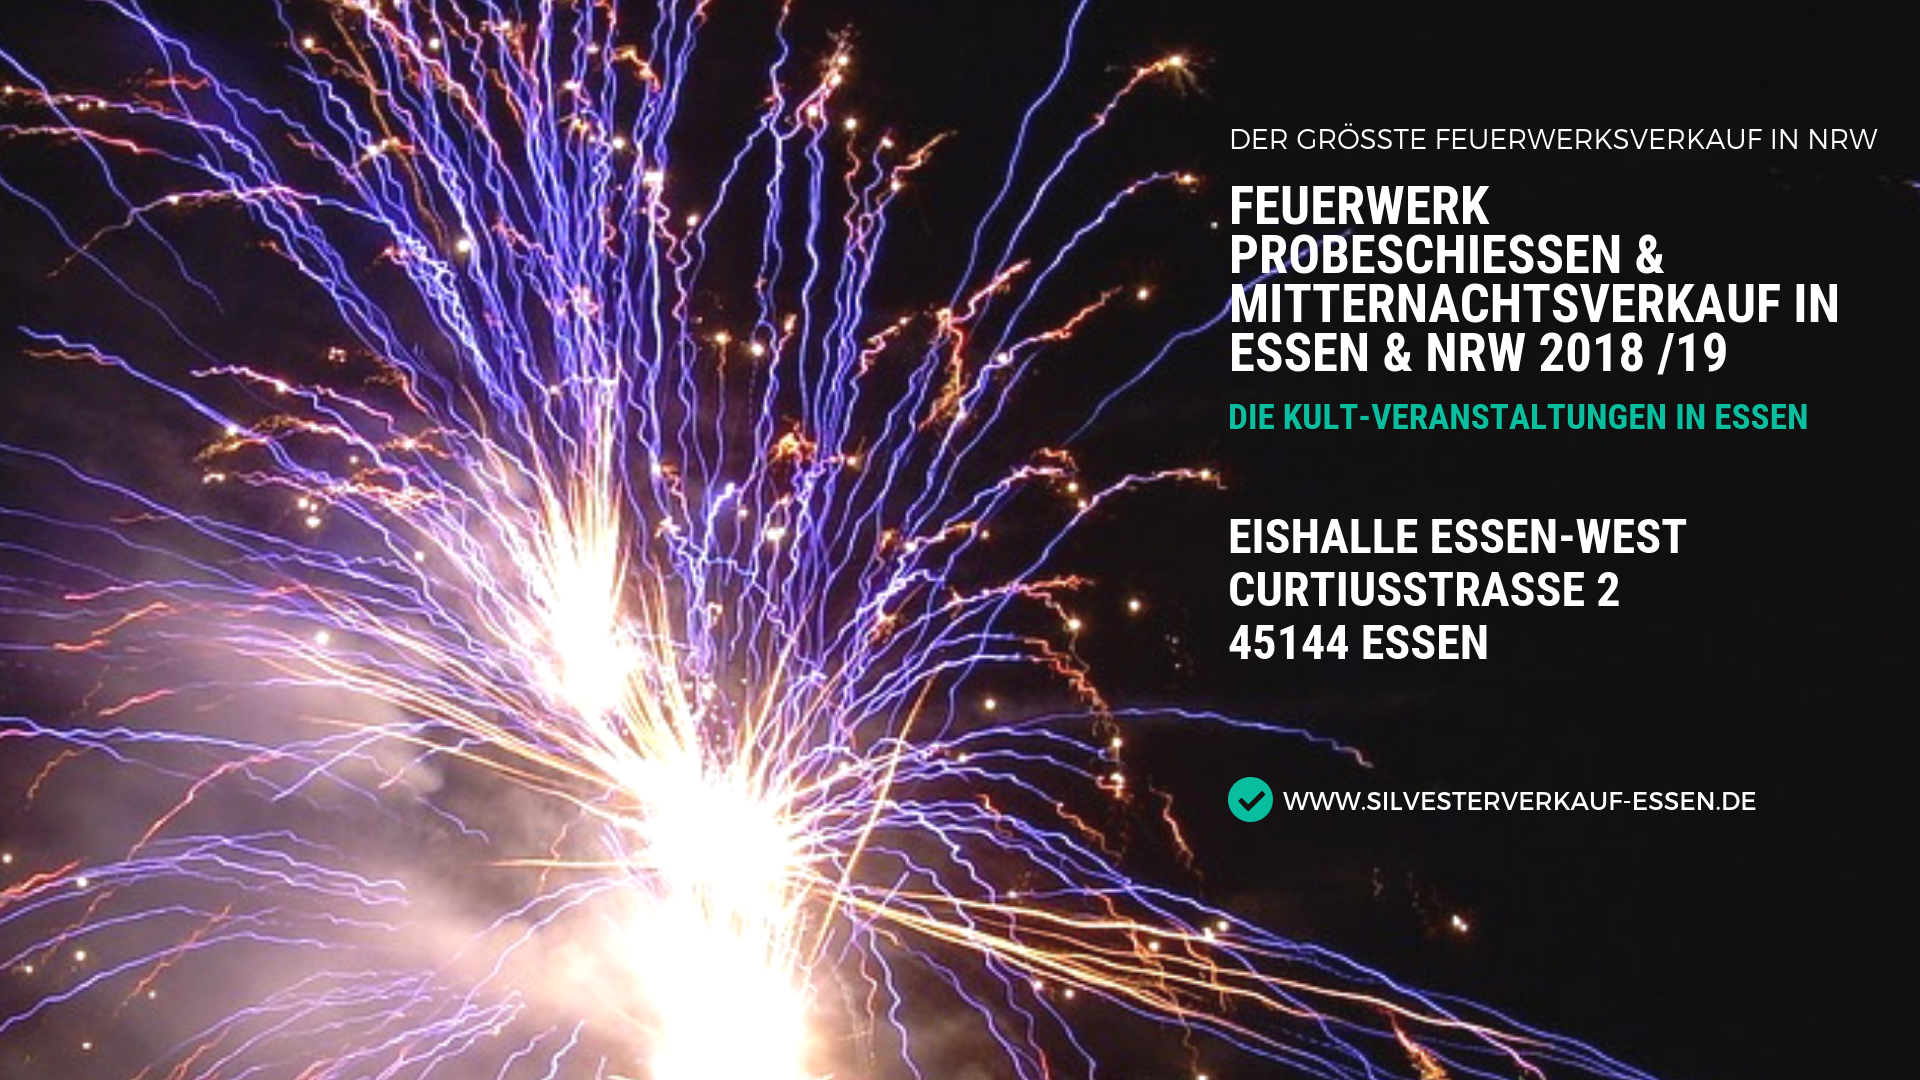 Feuerwerk Probeschießen & Mitternachtsverkauf in Essen & NRW 2018 19